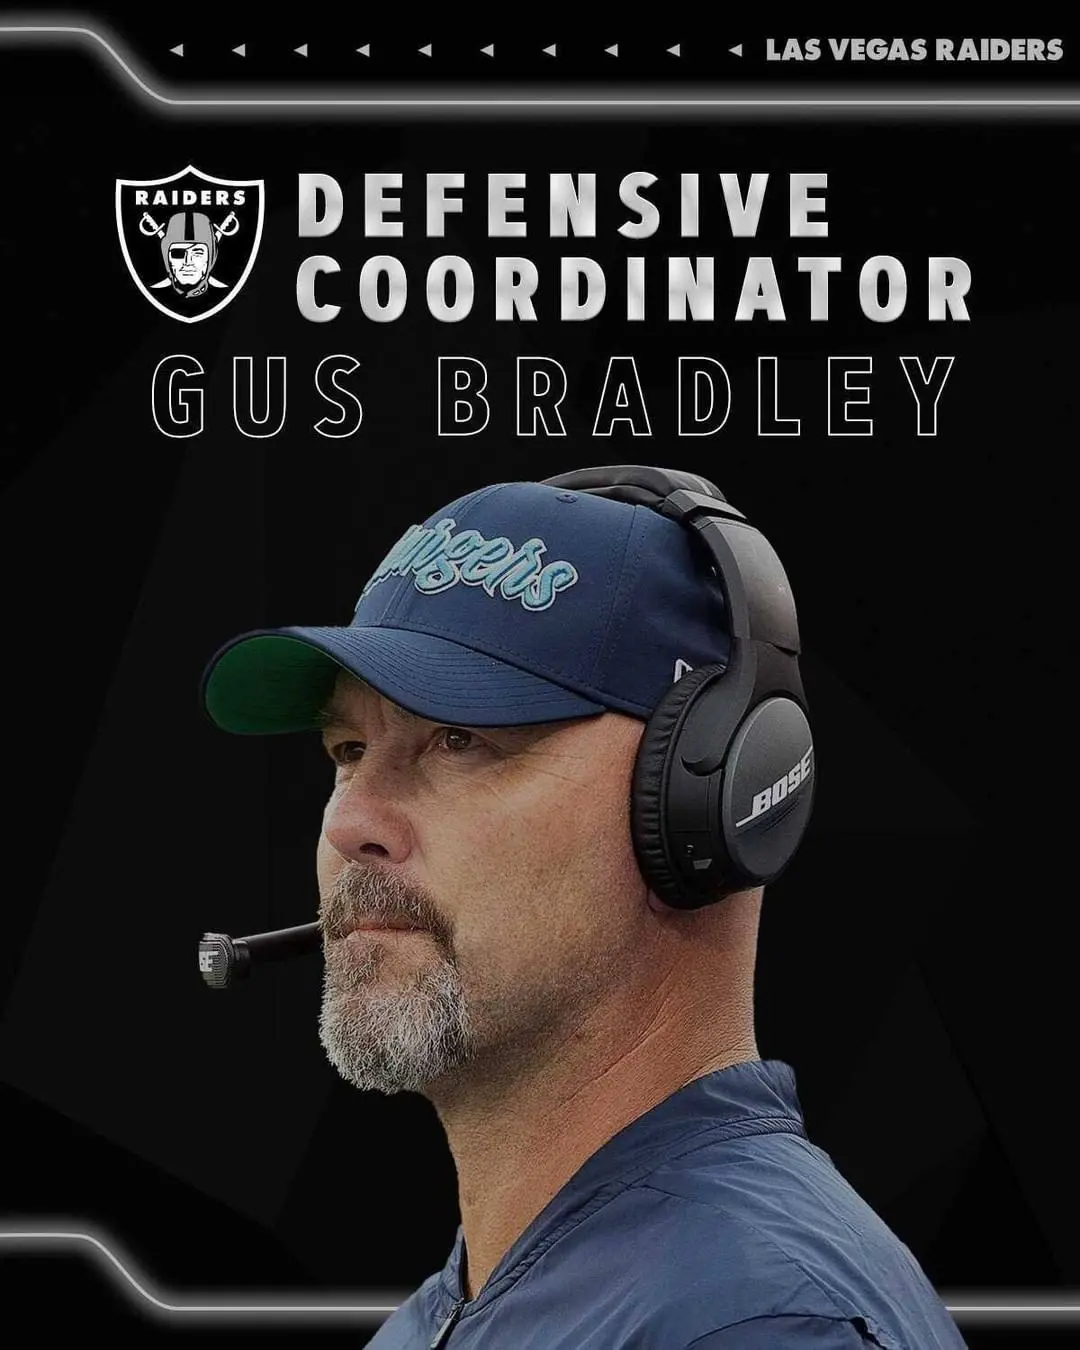 Gus Bradley, coordenador defensivo dos Raiders